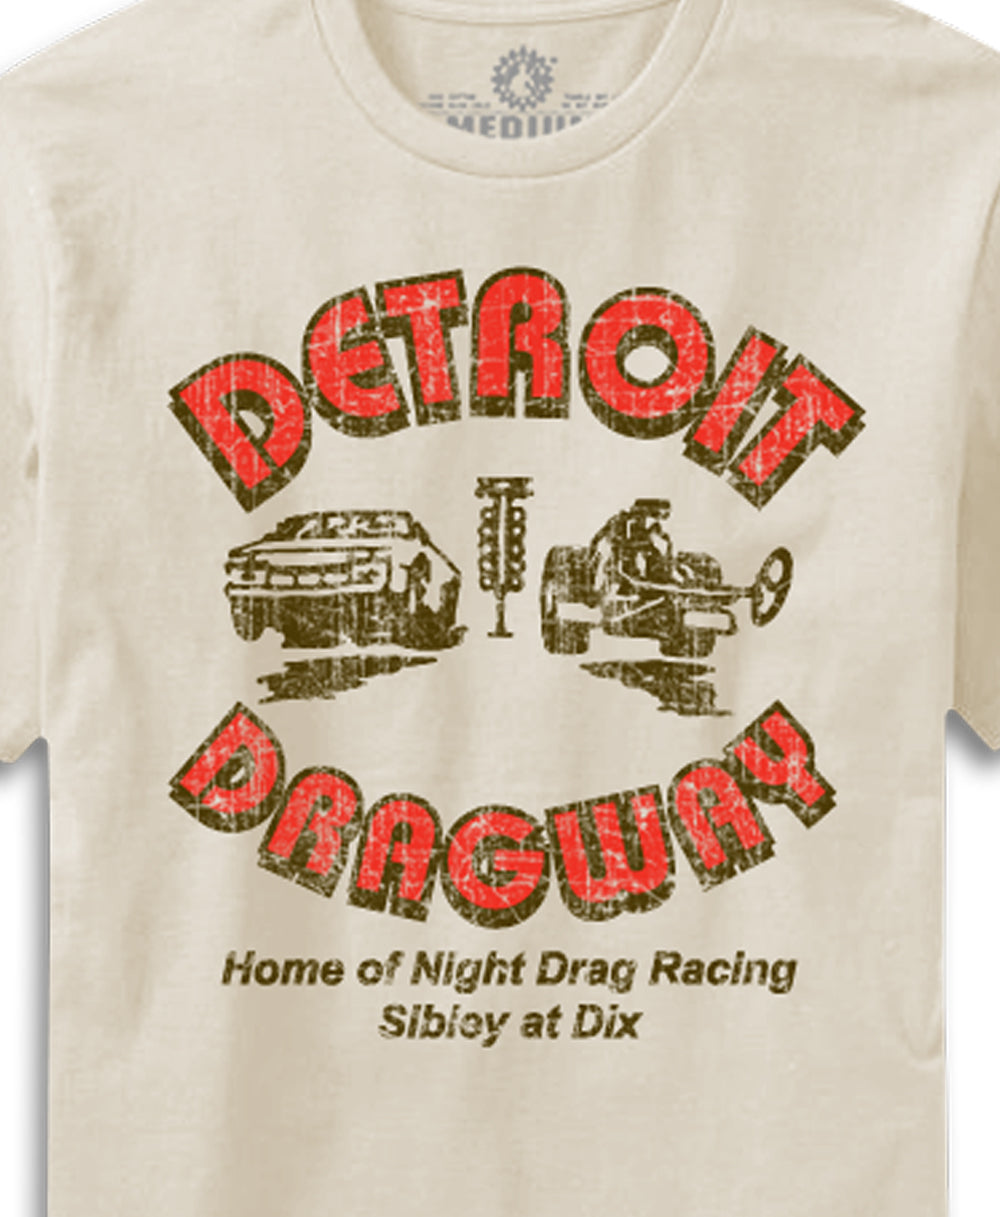 Detroit Dragway